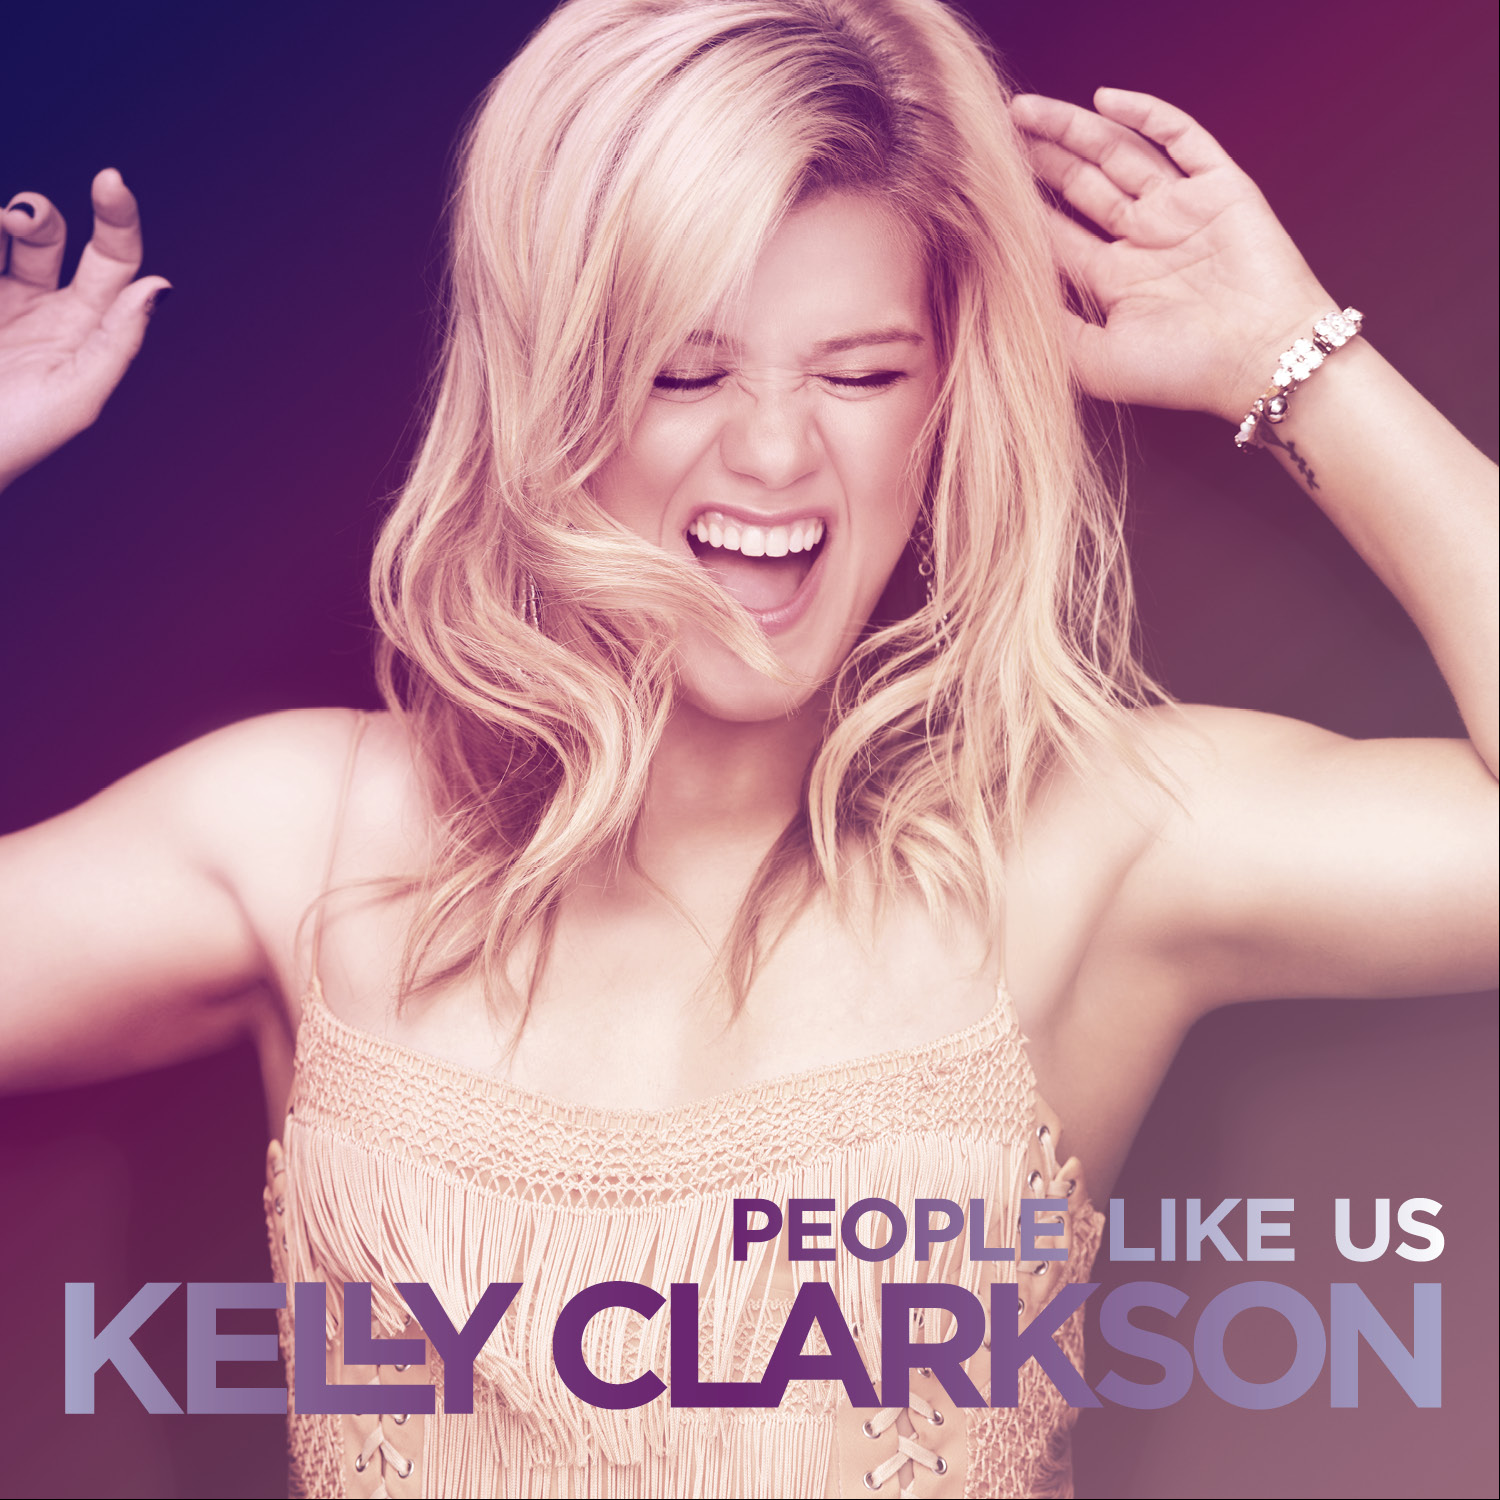 費城故事(Kelly Clarkson歌曲《People Like Us》)